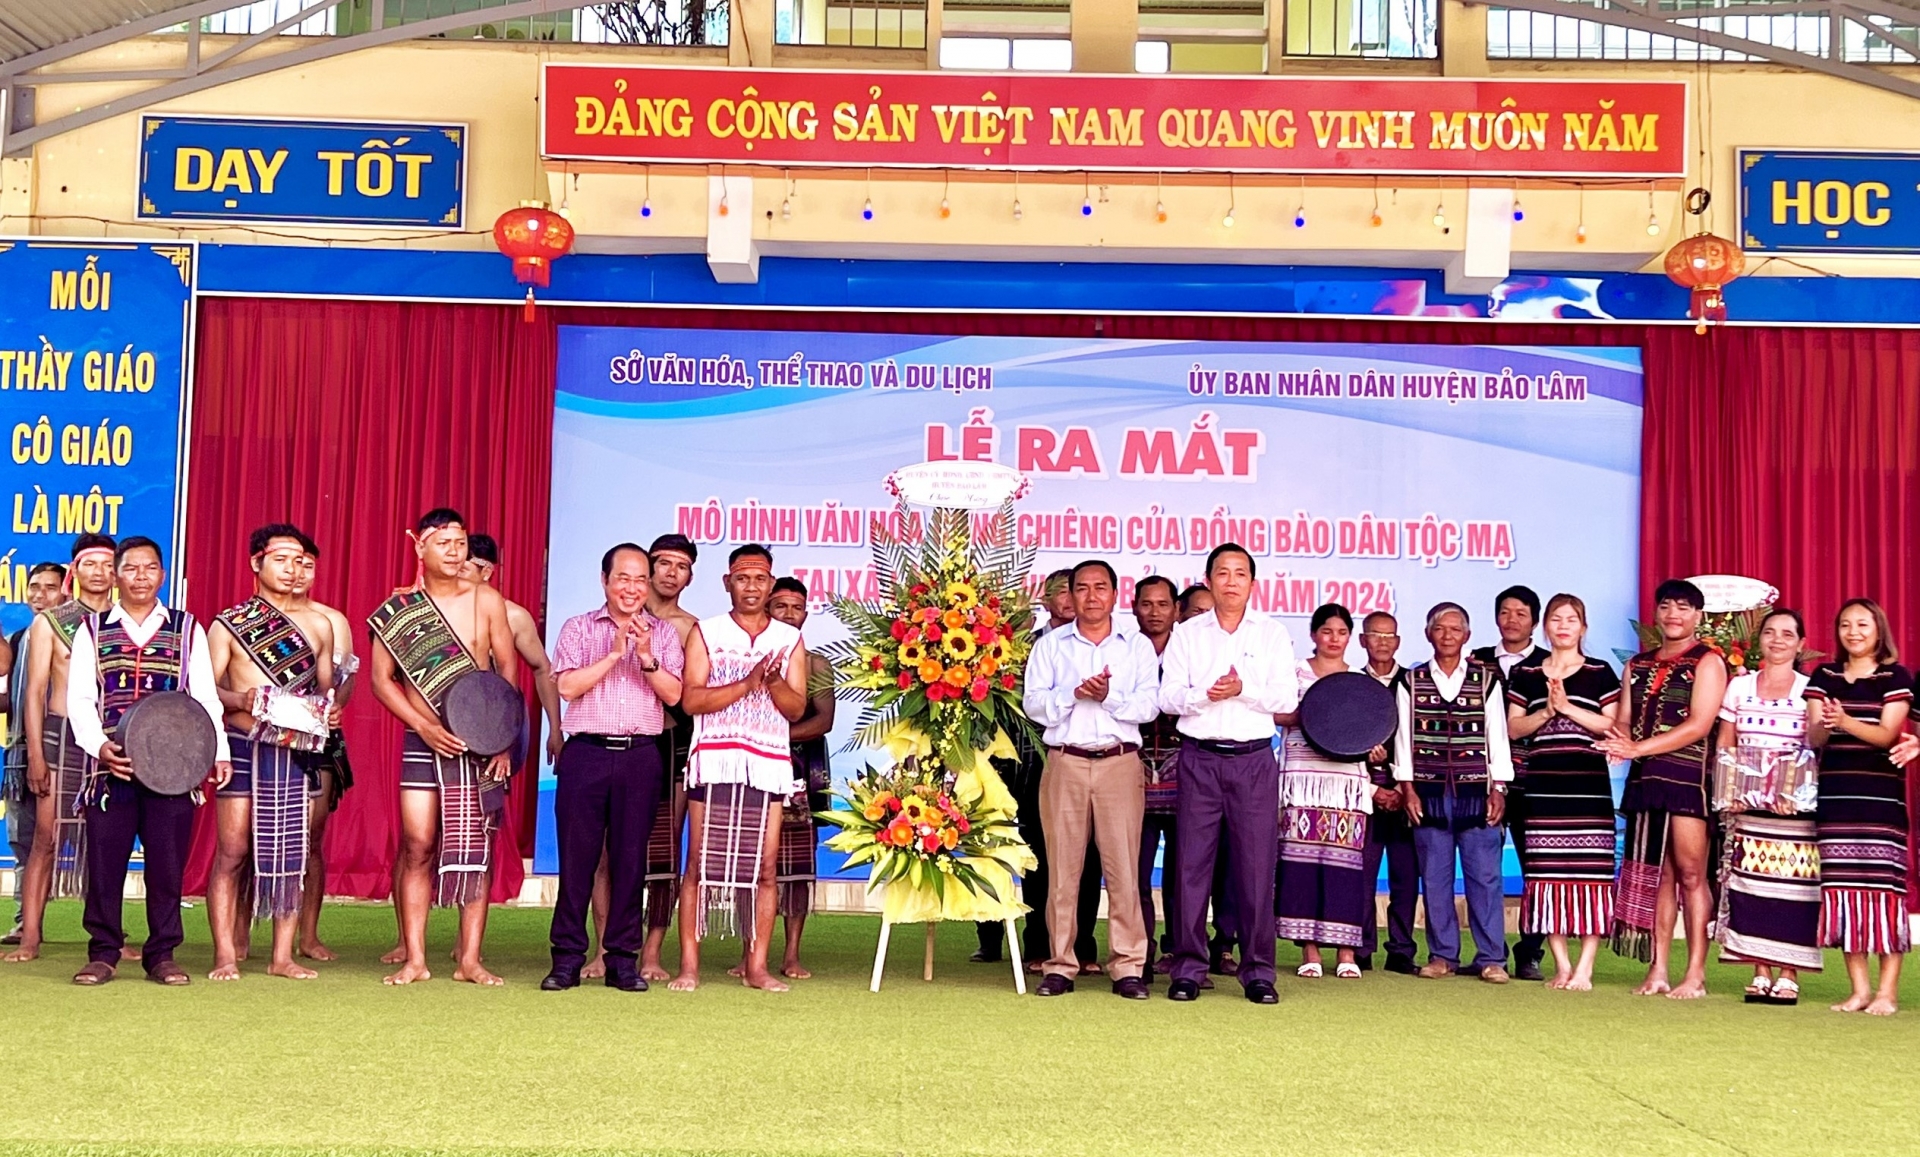 Lãnh đạo Sở Văn hóa Thể thao và Du lịch tỉnh Lâm Đồng cùng lãnh đạo huyện Bảo Lâm tặng hoa chúc mừng ra mắt Mô hình sinh hoạt văn hóa cồng chiêng tại xã Lộc Tân